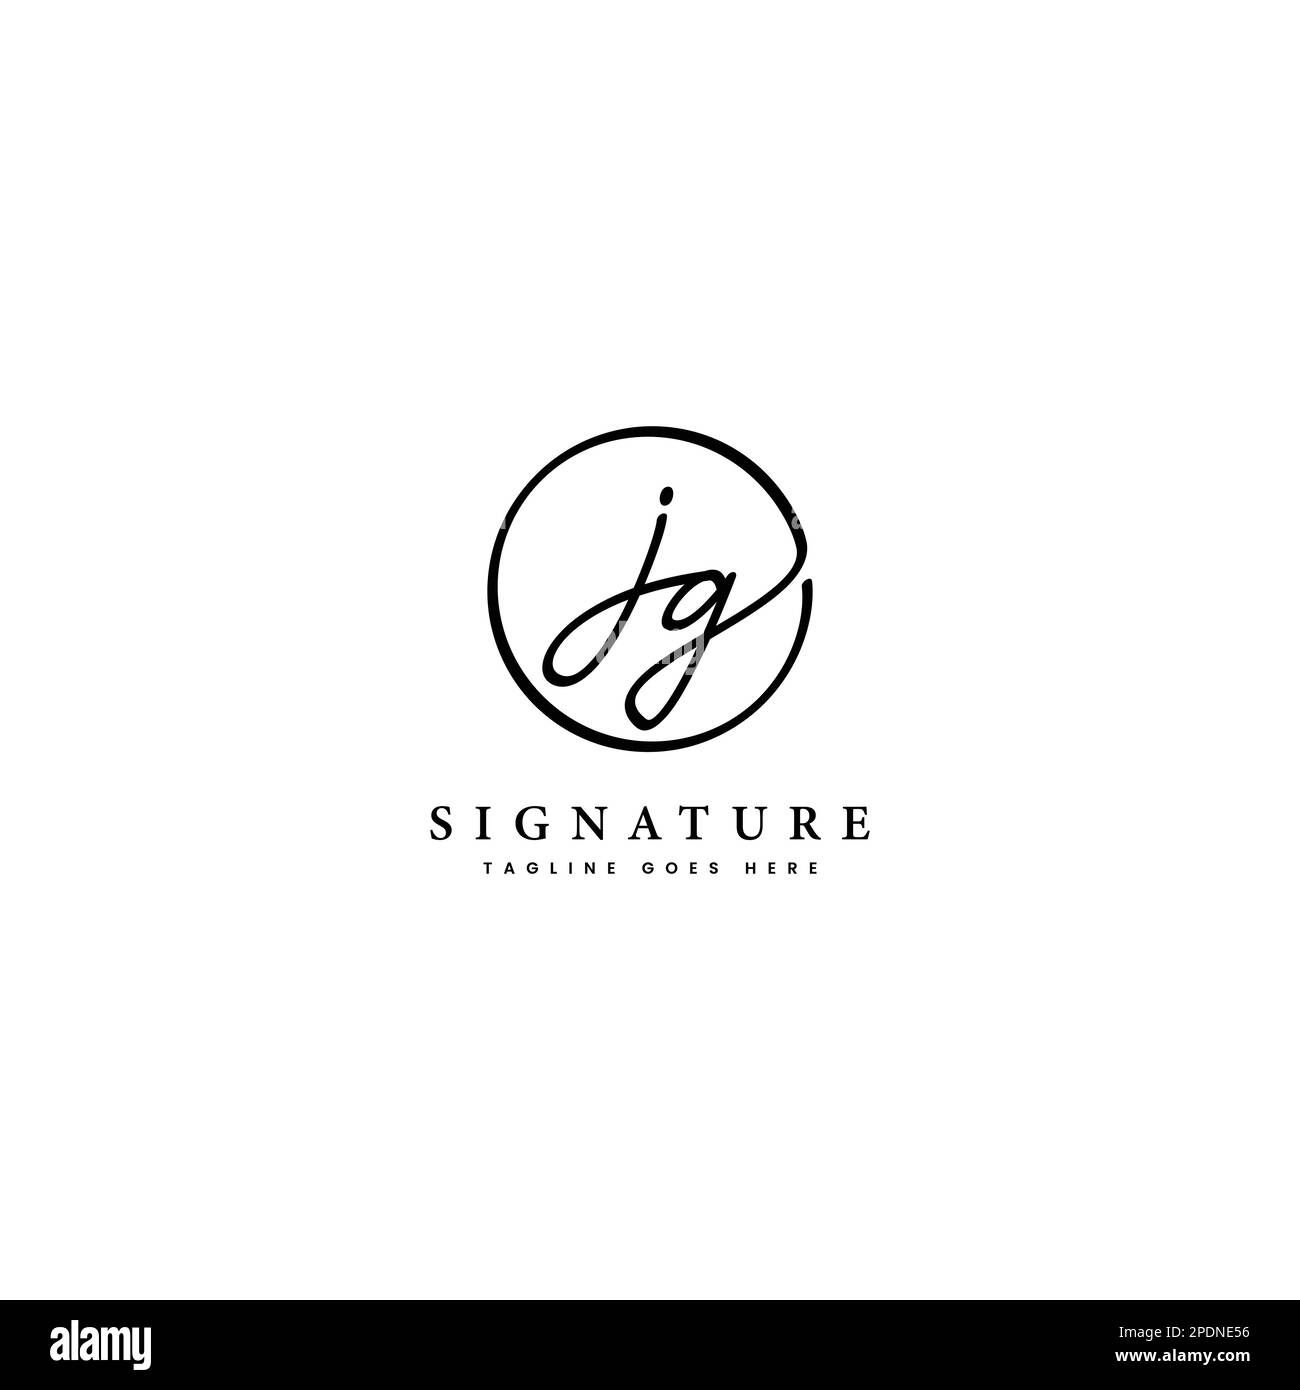 J, G, JG lettre initiale manuscrite et logo vectoriel de signature. Modèle d'entreprise en dessin au trait de forme ronde Illustration de Vecteur